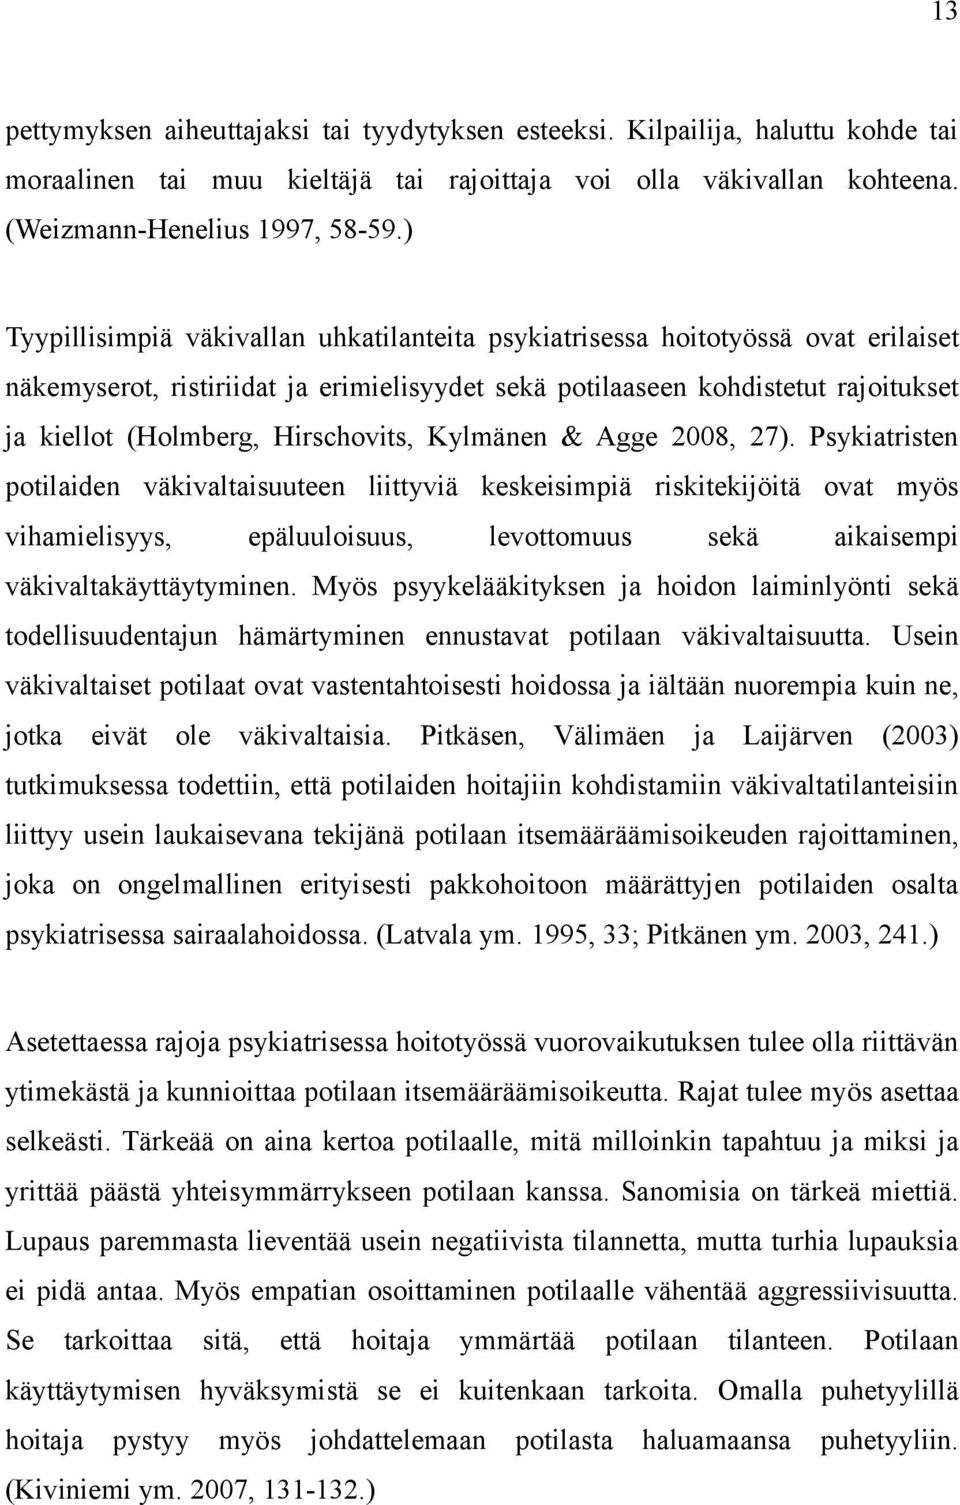 Hirschovits, Kylmänen & Agge 28, 27).